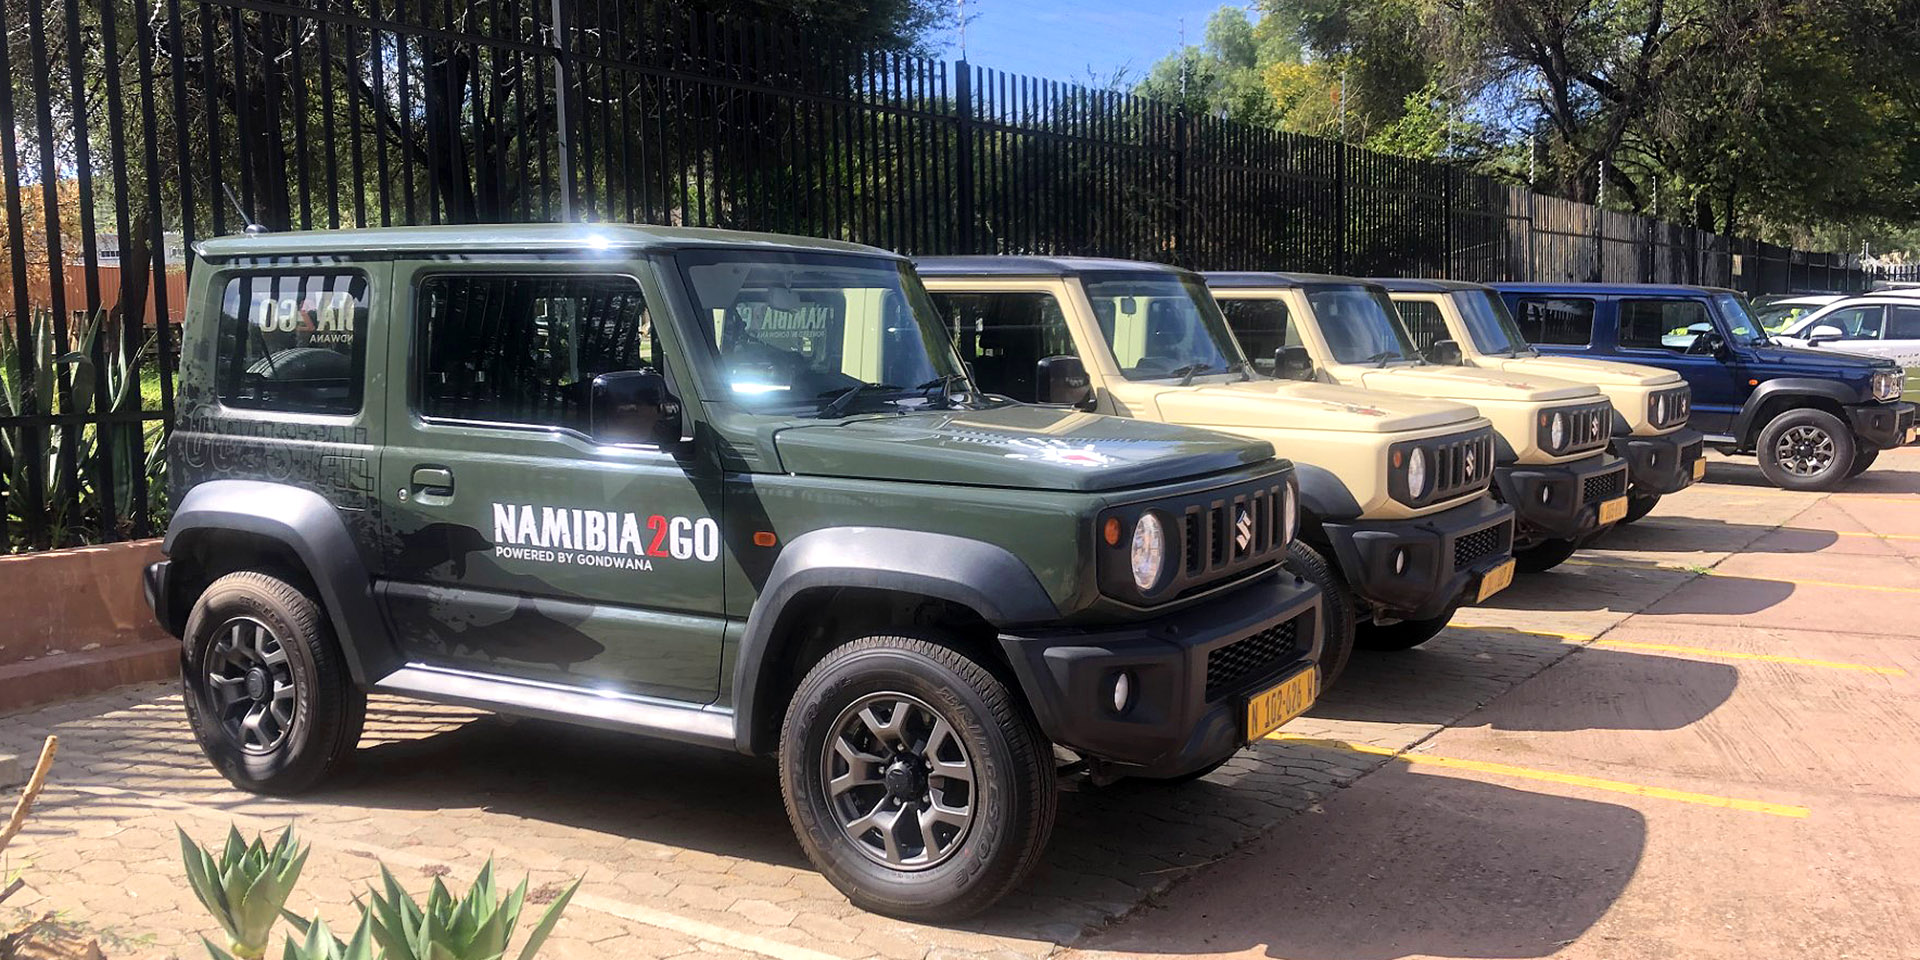 Namibia2Go Mietwagen mit Küsten-Branding